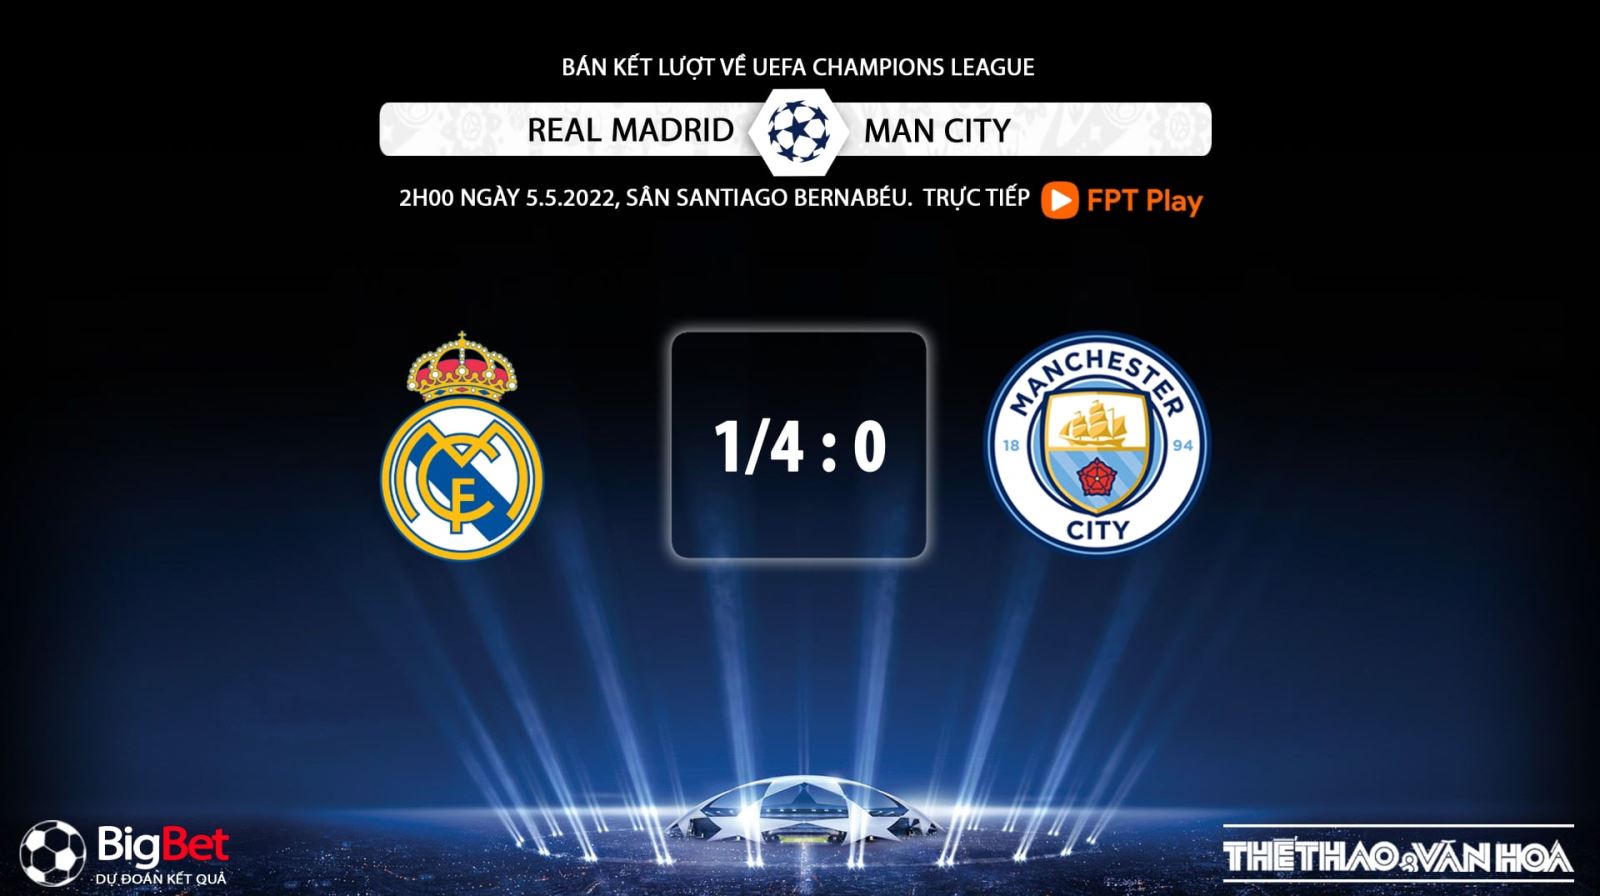 Real Madrid vs Man City, nhận định kết quả, nhận định bóng đá Real Madrid vs Man City, nhận định bóng đá, Man City, Real Madrid, keo nha cai, dự đoán bóng đá, Cúp C1, Champions League